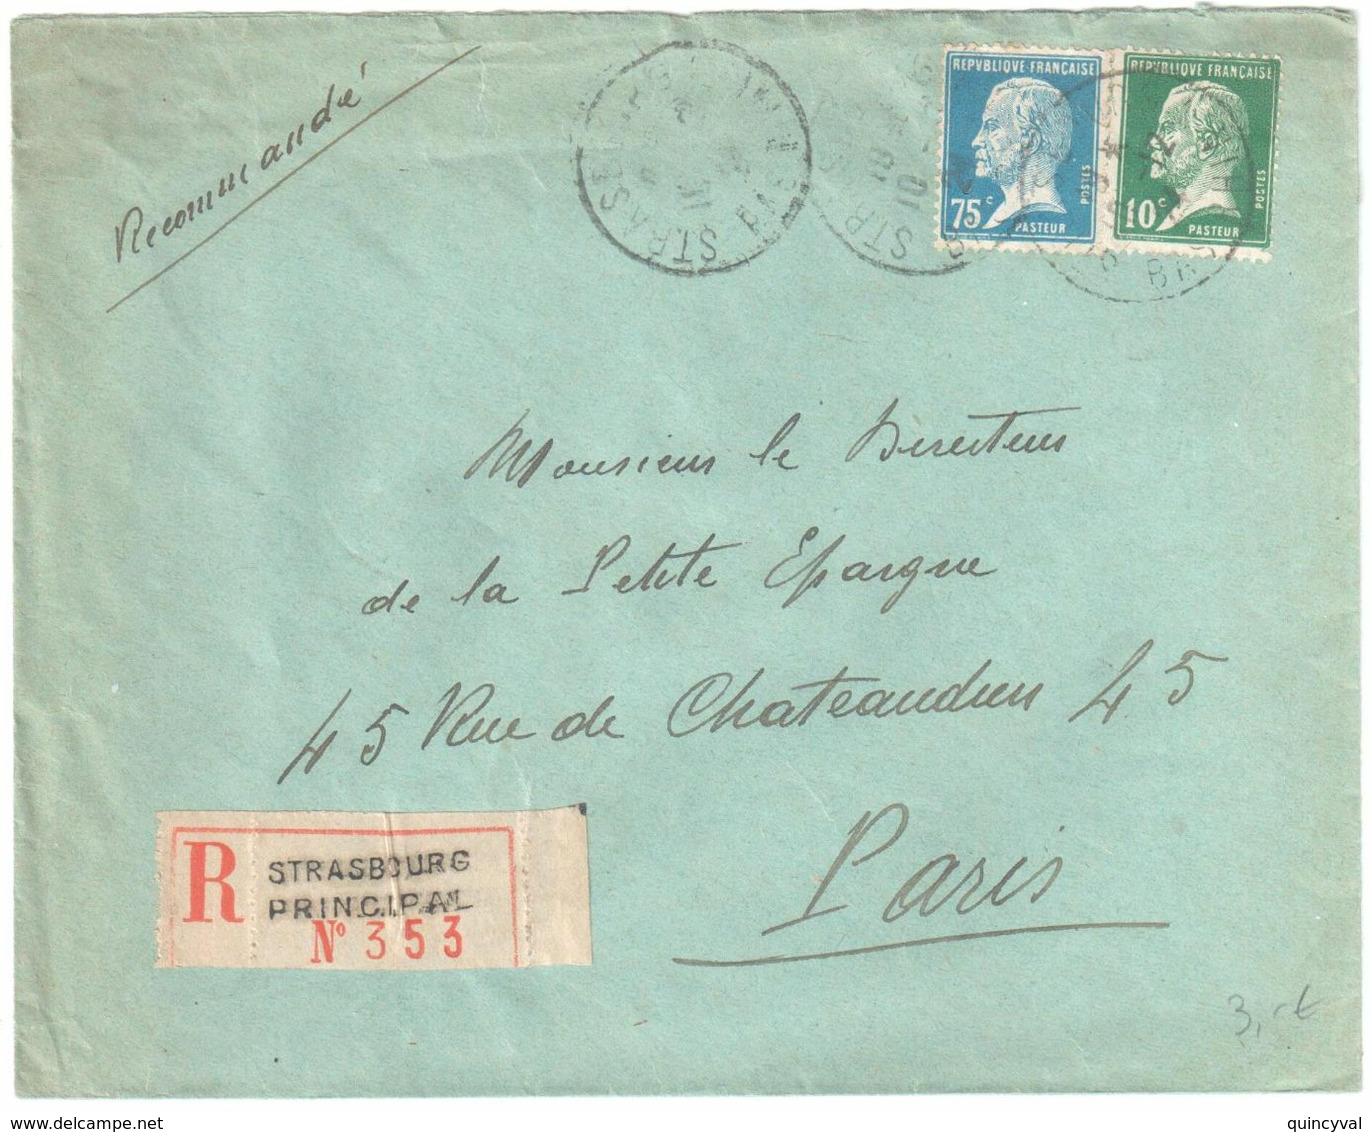 ARLES S RHONE Lettre Recommandée 1 F Pasteur Bord De Feuille 5c Blanc Yv 111 179 Ob 18 1 1926 - Storia Postale